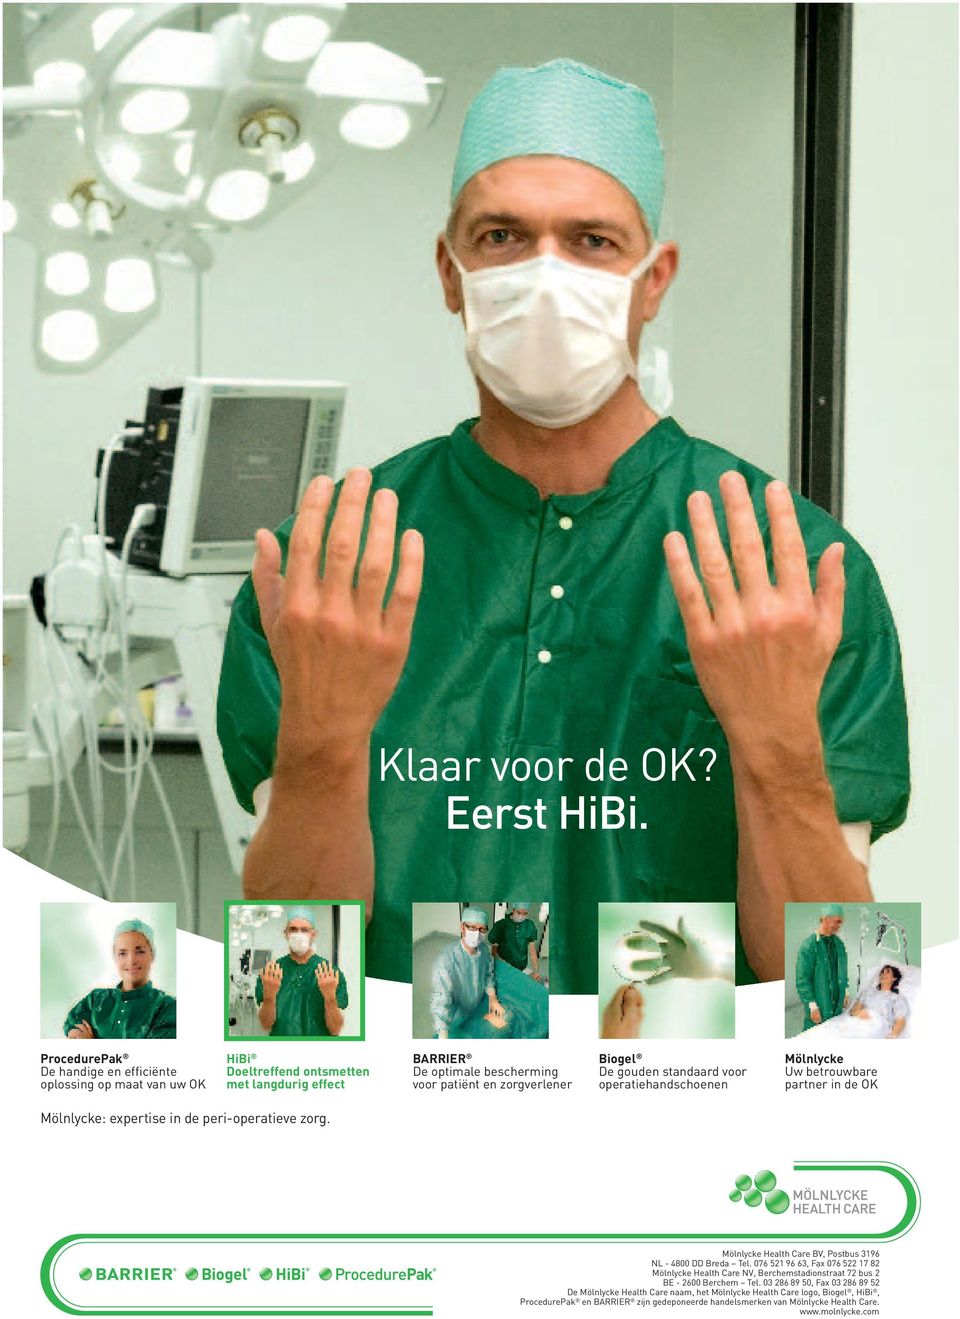 De gouden standaard voor operatiehandschoenen Mölnlycke Uw betrouwbare partner in de OK Mölnlycke: expertise in de peri-operatieve zorg.